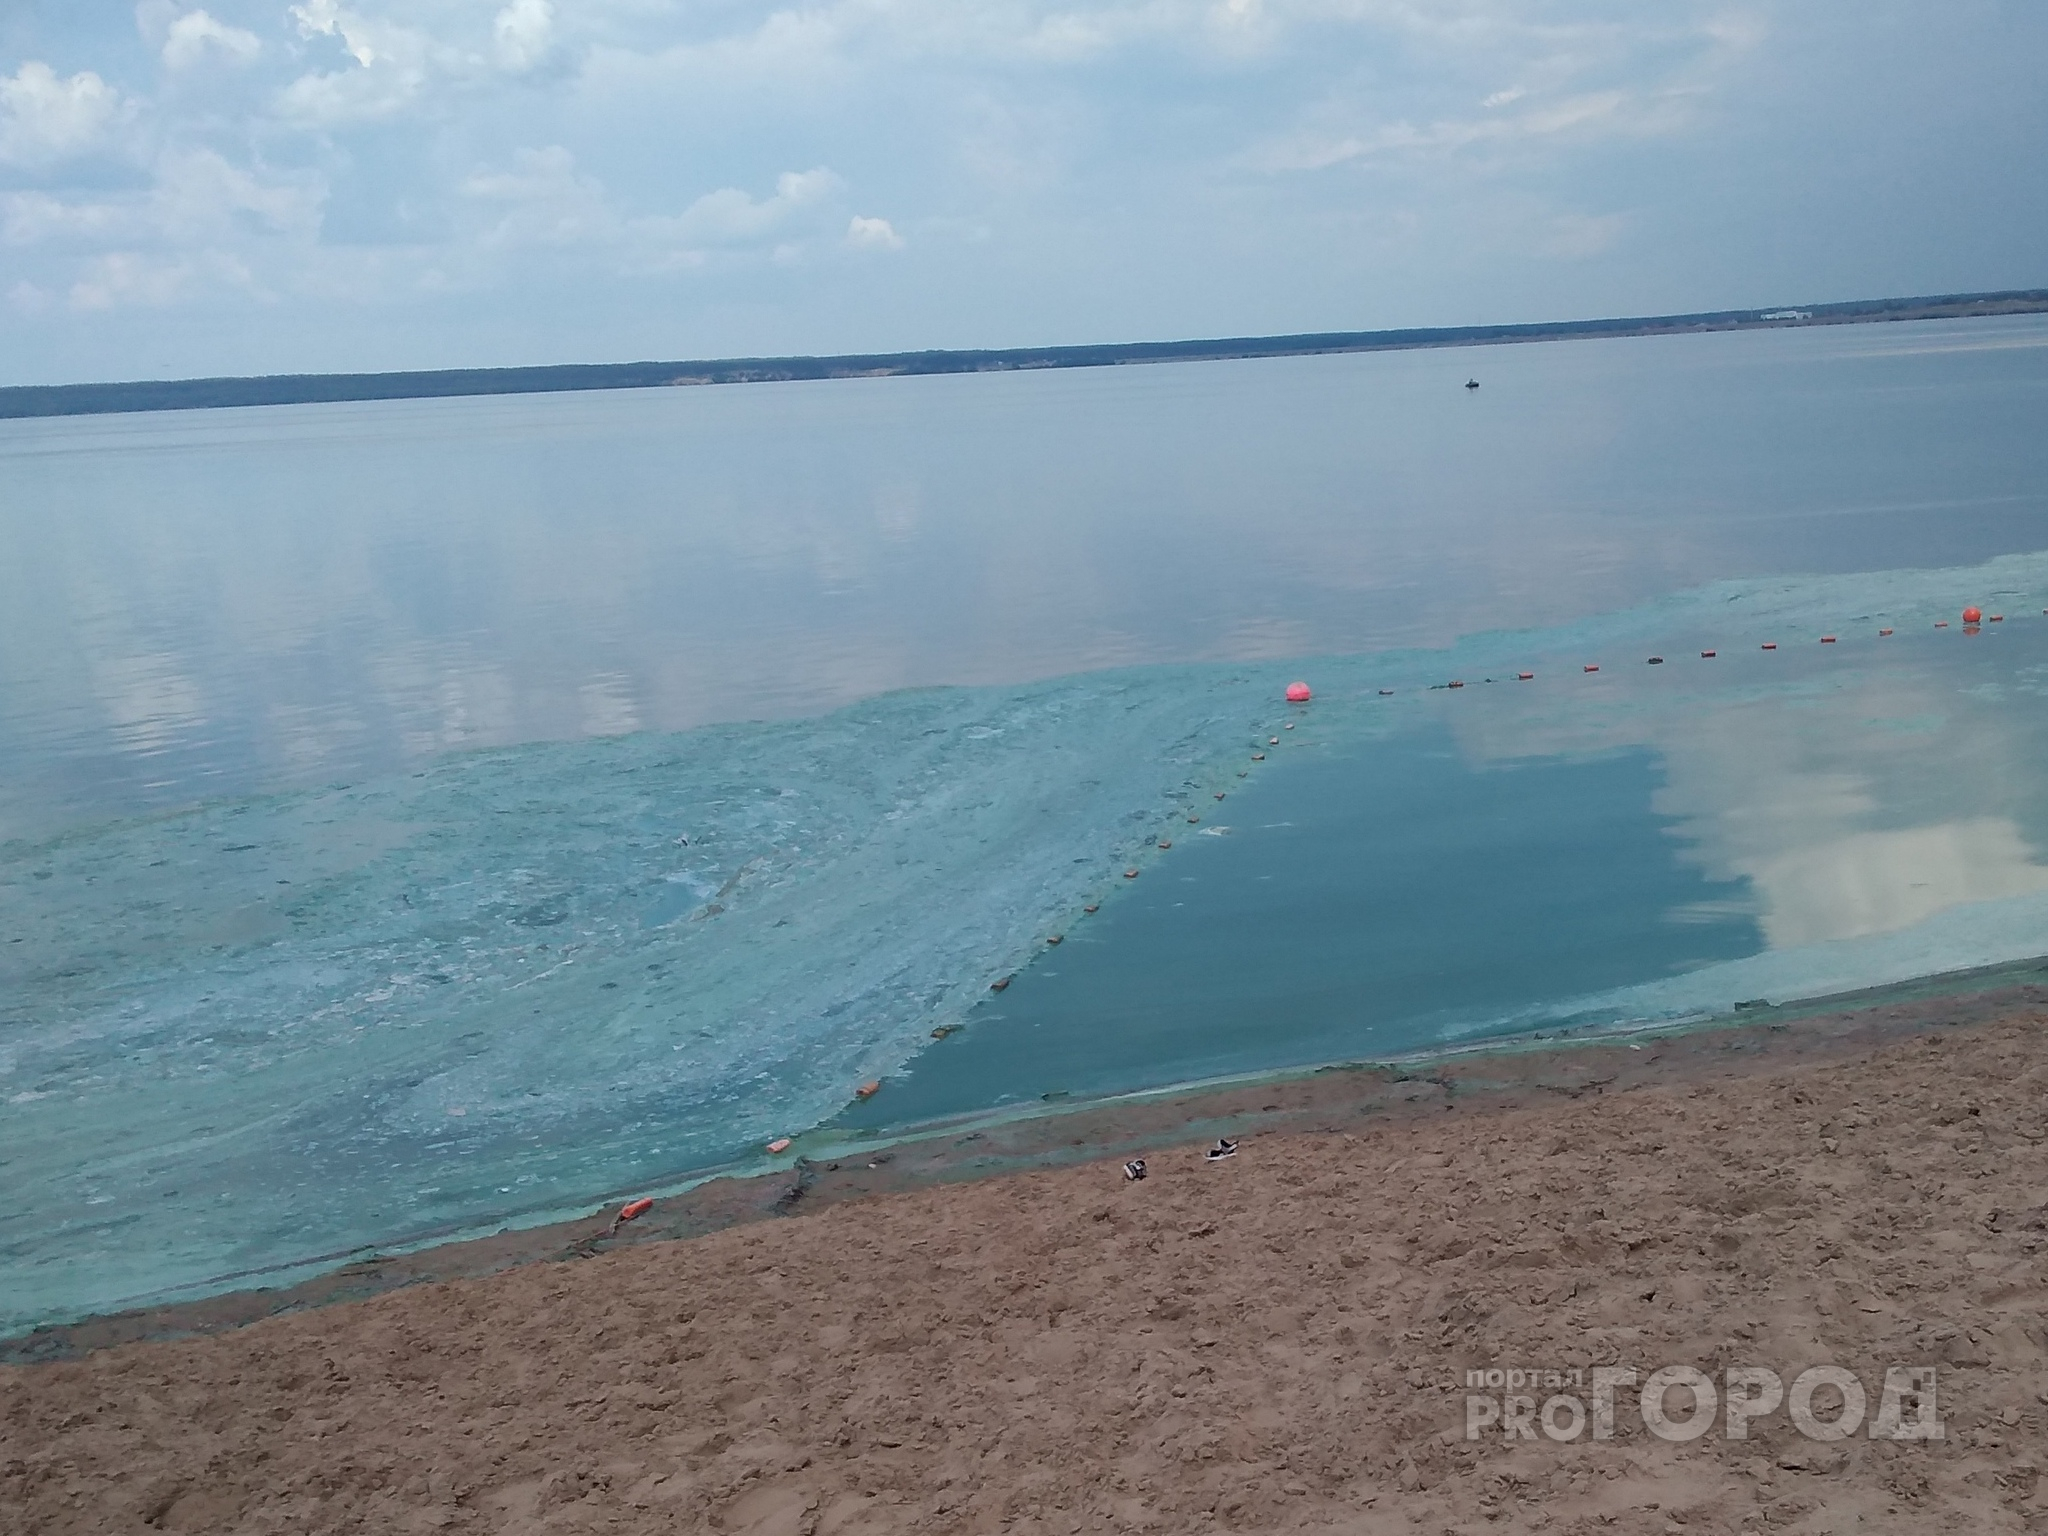 Центральный пляж Чебоксар накрыла зловонная жижа: “Купаться невозможно, это вообще нормально?”